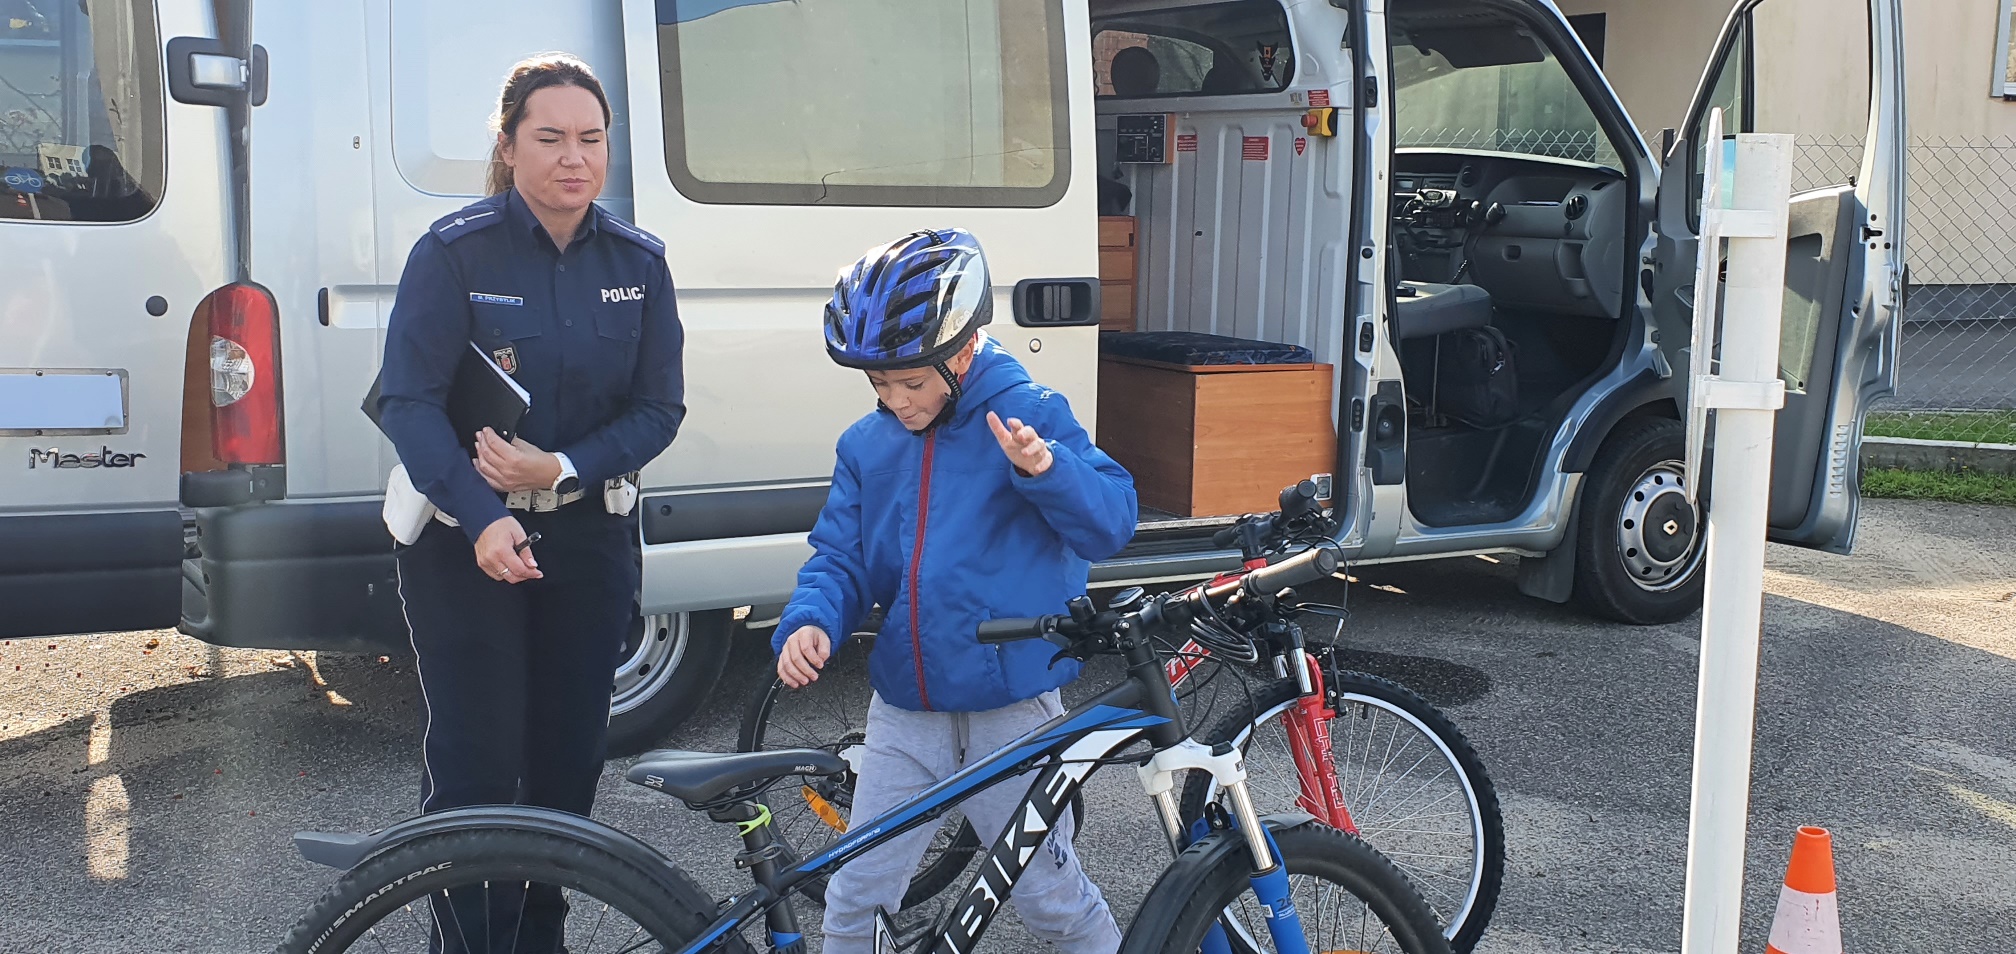 Dziecko w niebieskim kasku stoi za rowerem. Po jego praqwej stronie stoi polcjantka